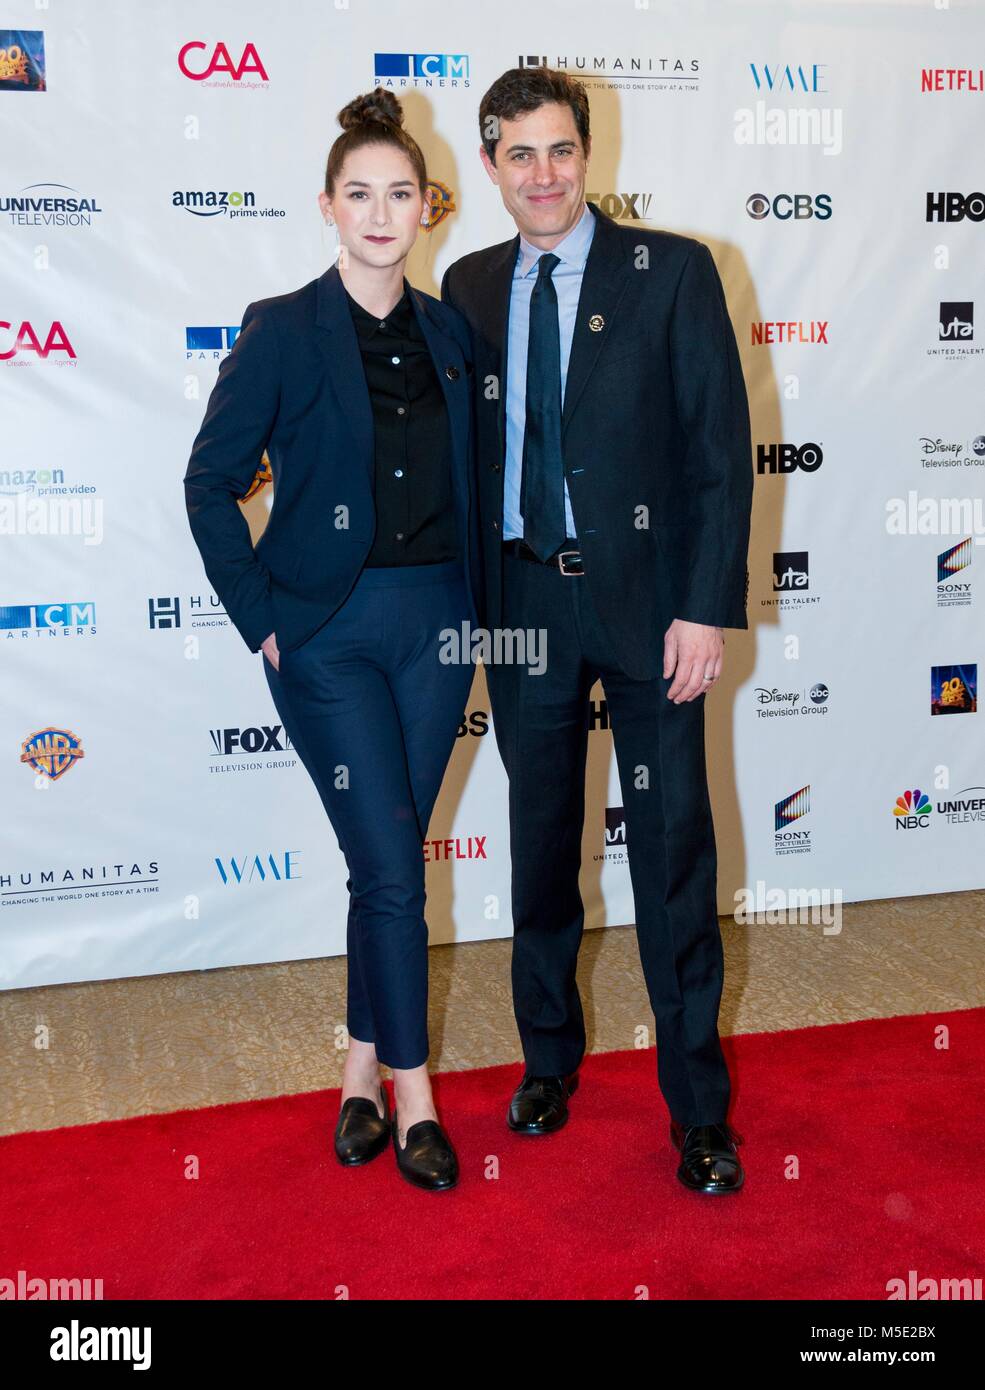 Liz Hannah and Josh Singer at the Humanitas awards 2018 Stock Photo